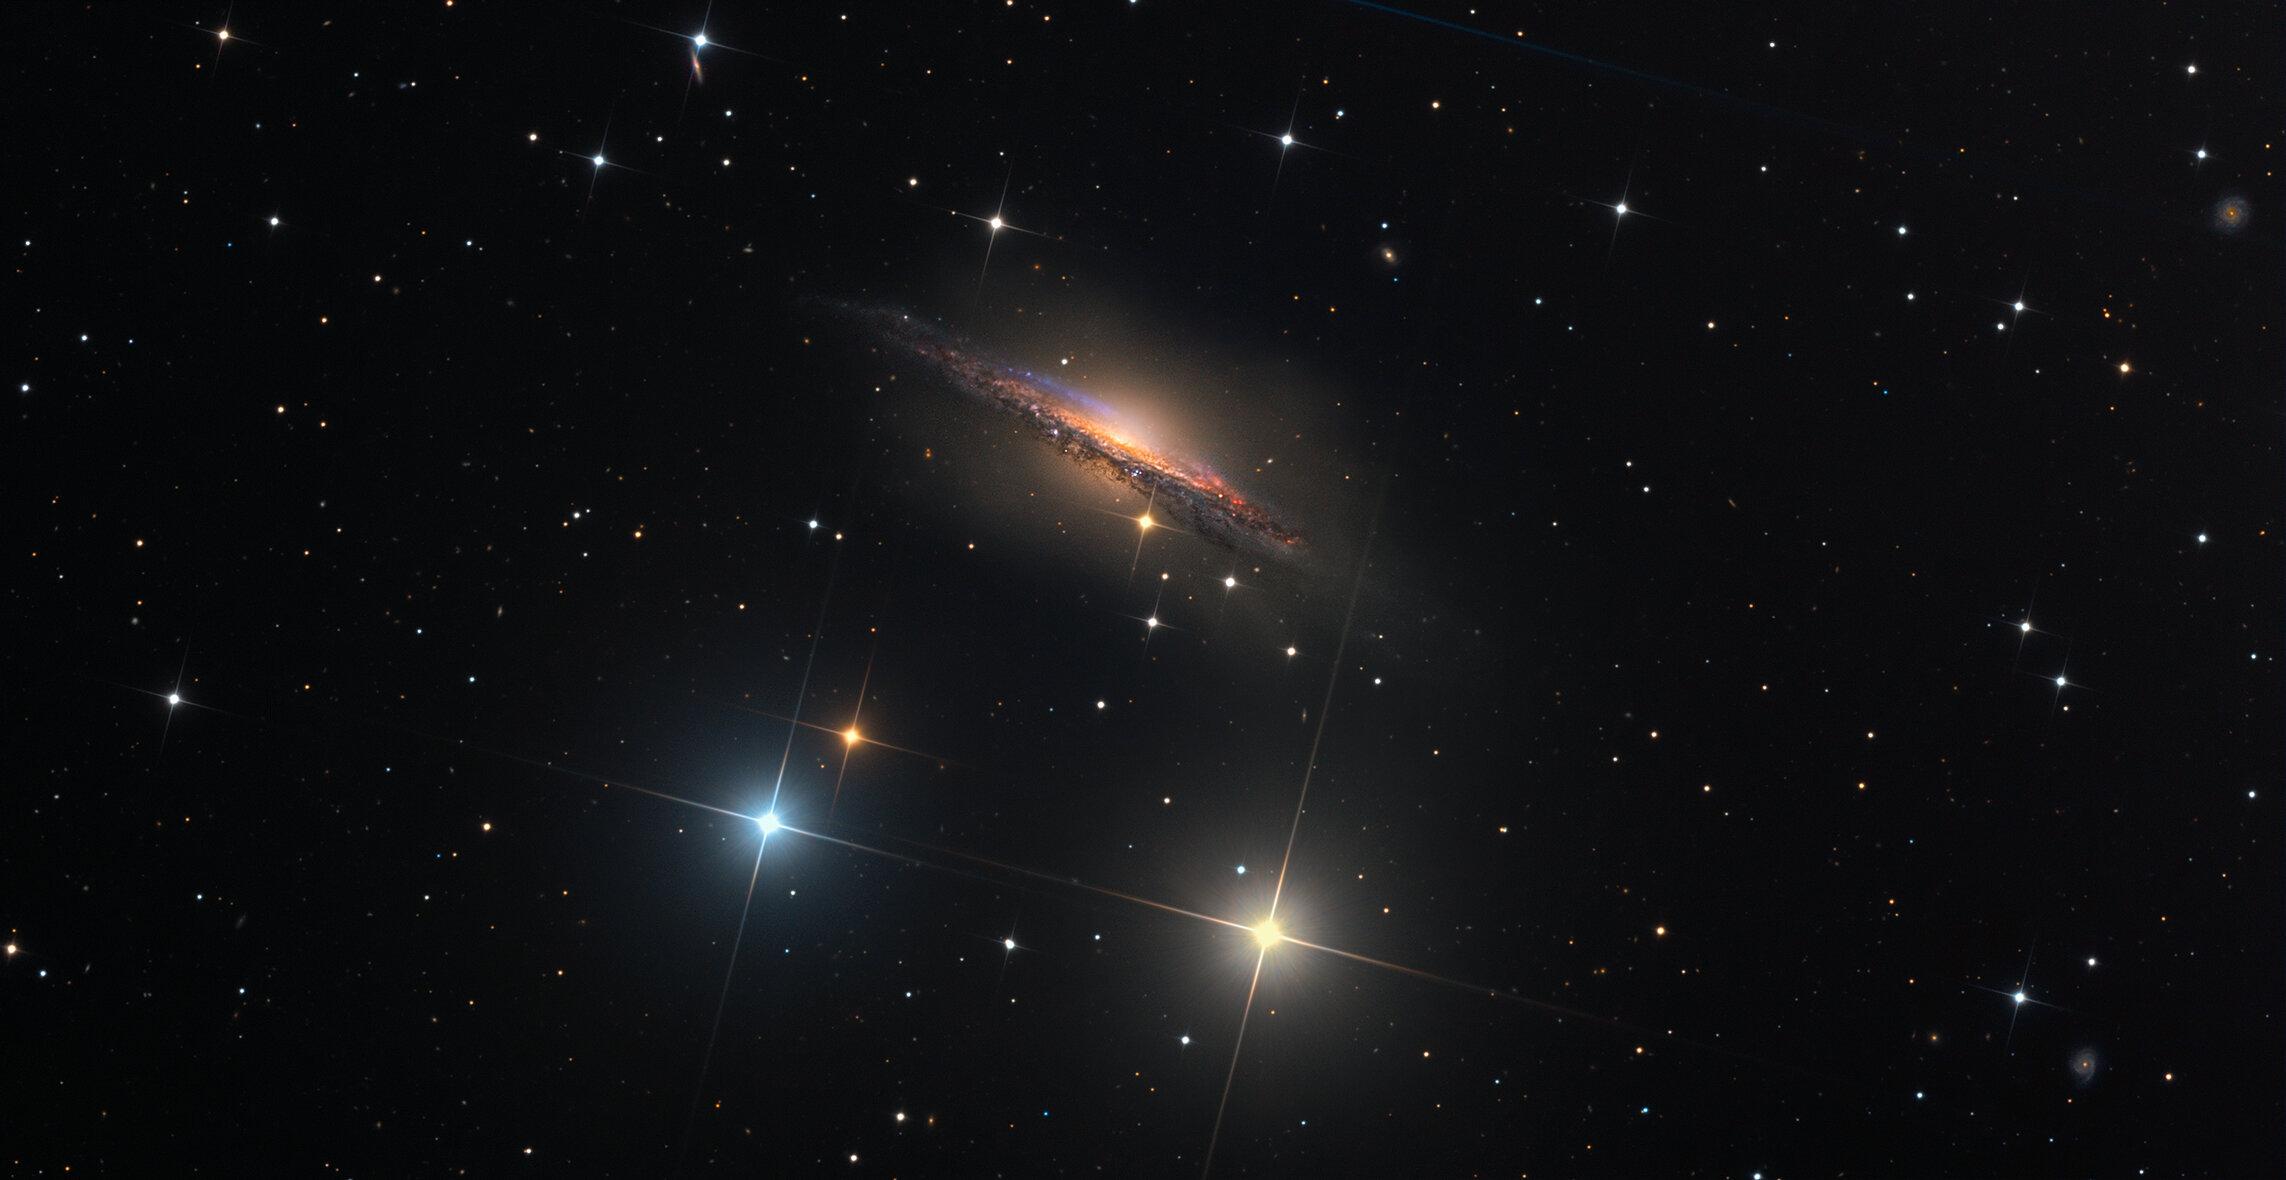 المجرة الحلزونية إن‌جي‌سي 1055 والتي تظهر لنا من جهة حافّتها. تظهر في الصورة نجوم ملونة ومدببة، كما تحتوي على مناطق ورديّة متناثرة بين ممرات الغبار الملتوية على امتداد القرص الرفيع للمجرة البعيدة. تظهر كذلك المزيد من المجرات الخلفية البعيدة الظاهرة بشكل سطحي بسيط. تكشف الصورة العميقة كذلك عن هالة صندوقية تمتد كثيراً أعلى وأسفل قرص هذه المجرة.